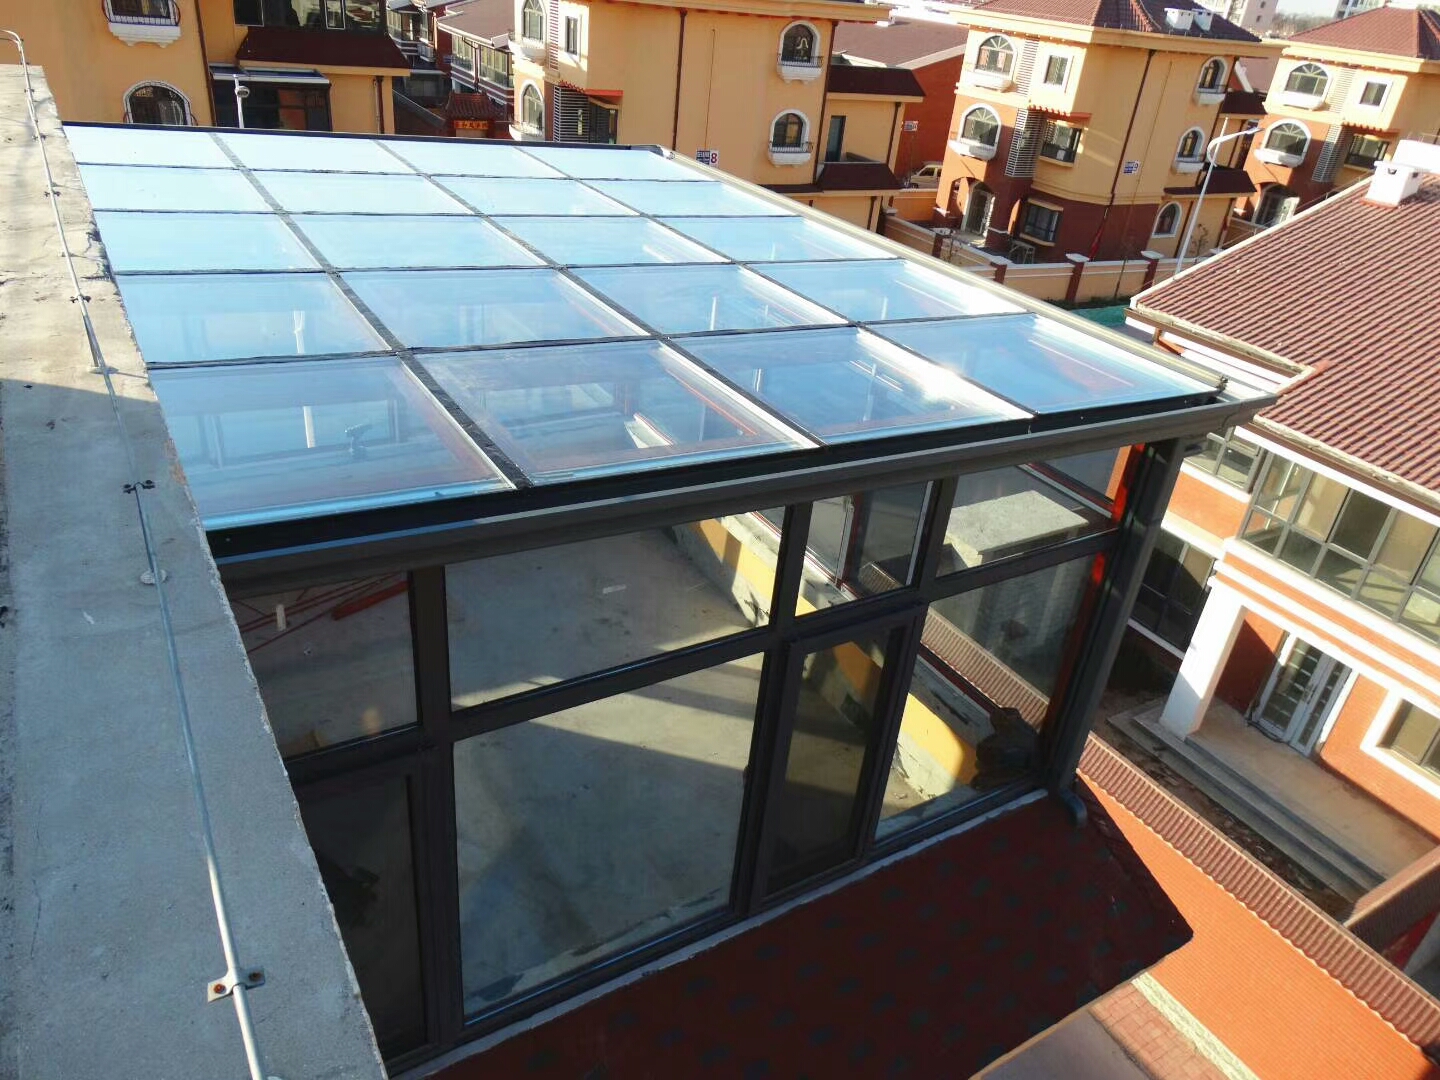 天津别墅欧式铝合金钢化玻璃可移动折叠阳光房钢结构搭建封阳台